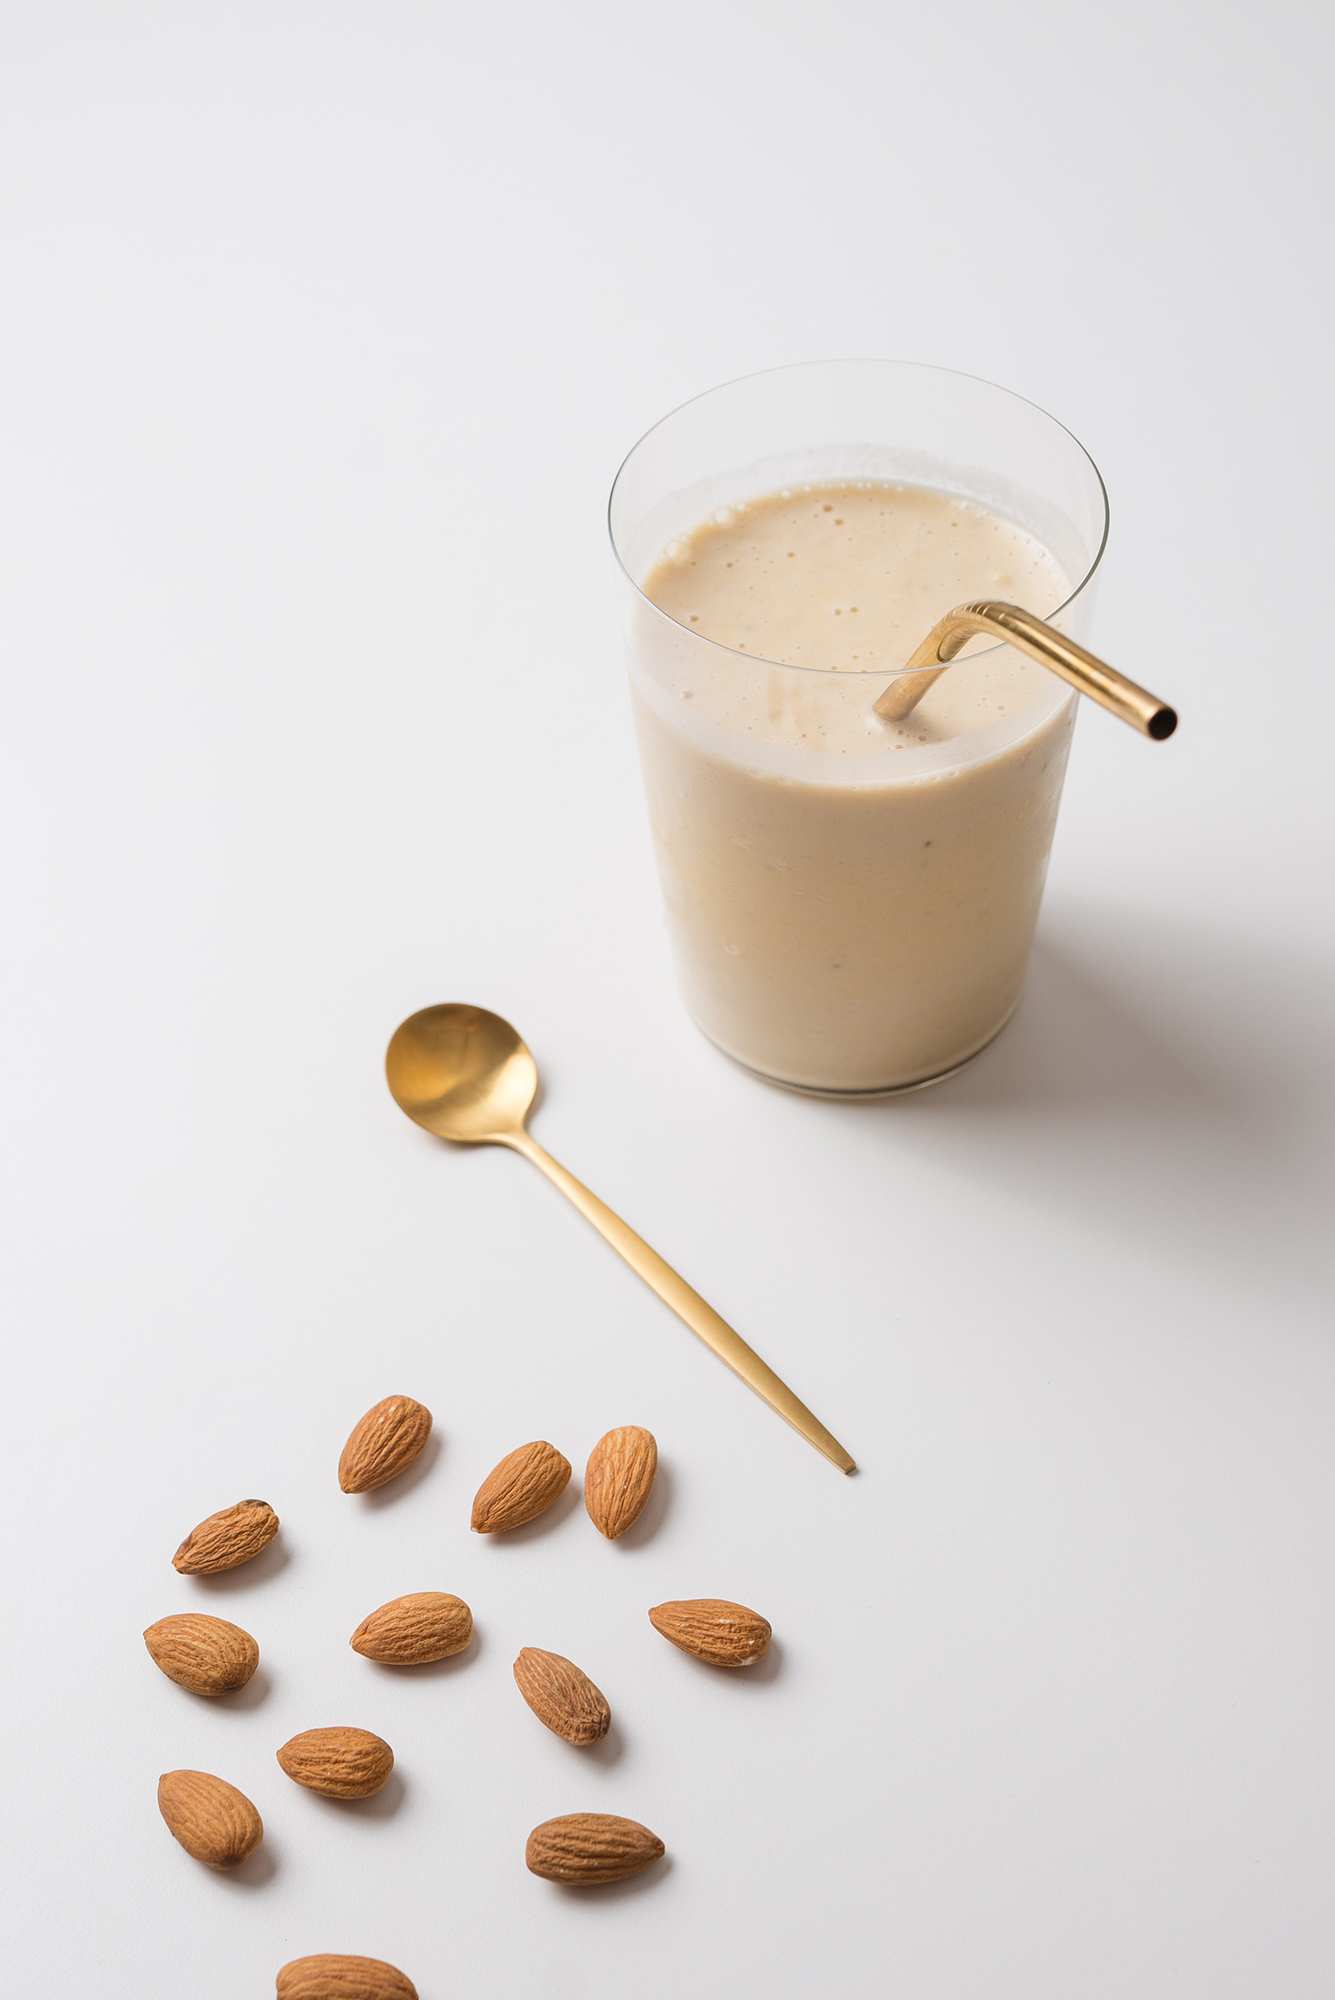 Sữa hạt bổ sung nhiều dưỡng chất cho cơ thể